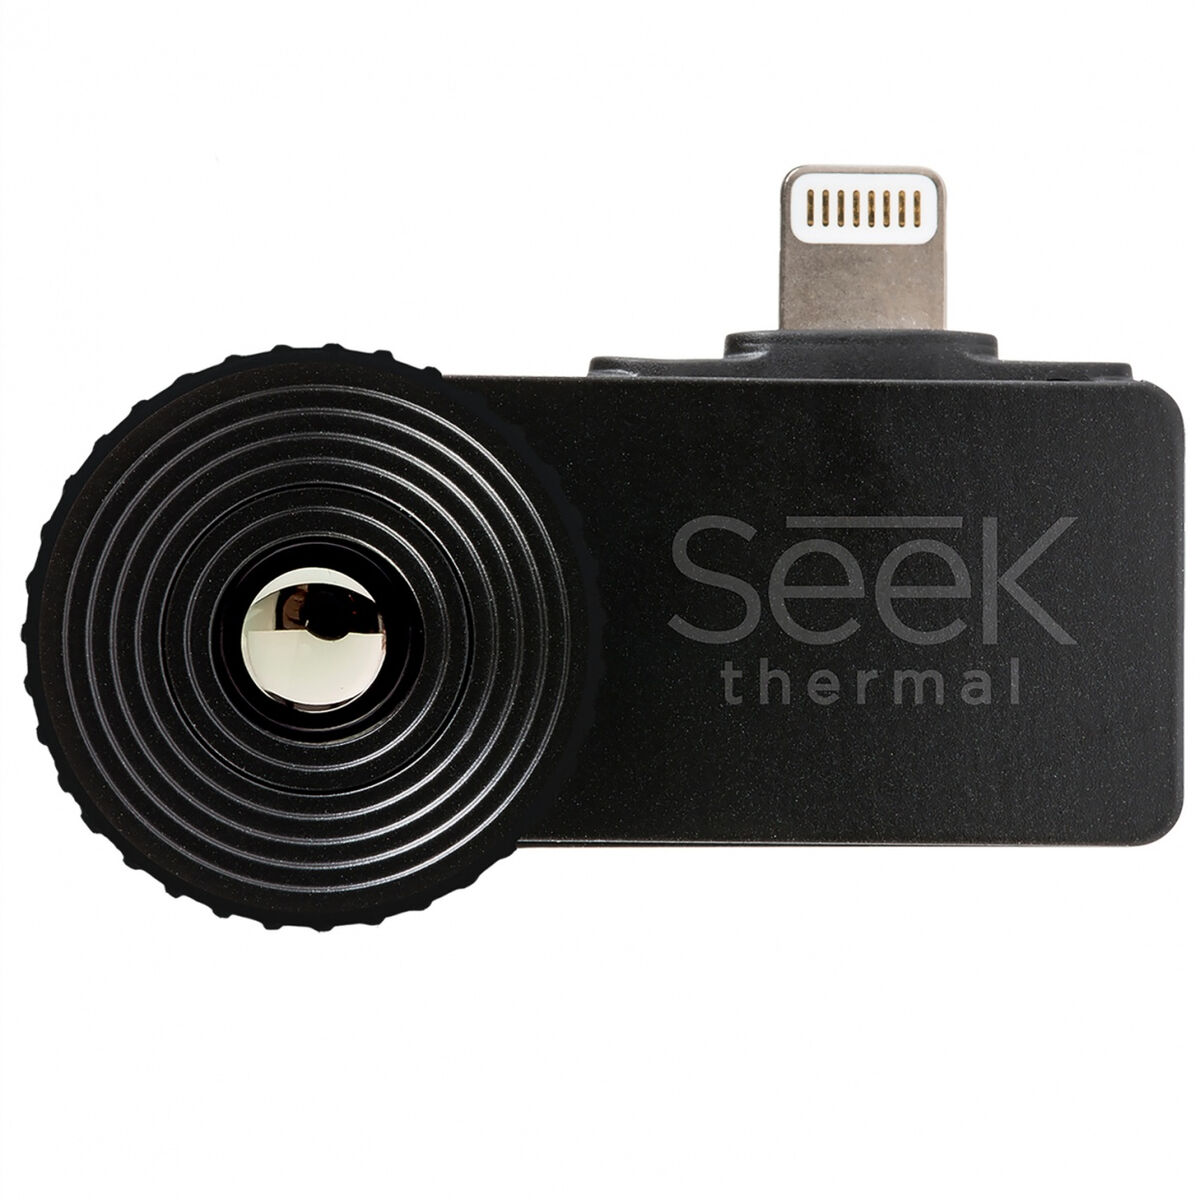 Termisk kamera Seek Thermal LT-AAA